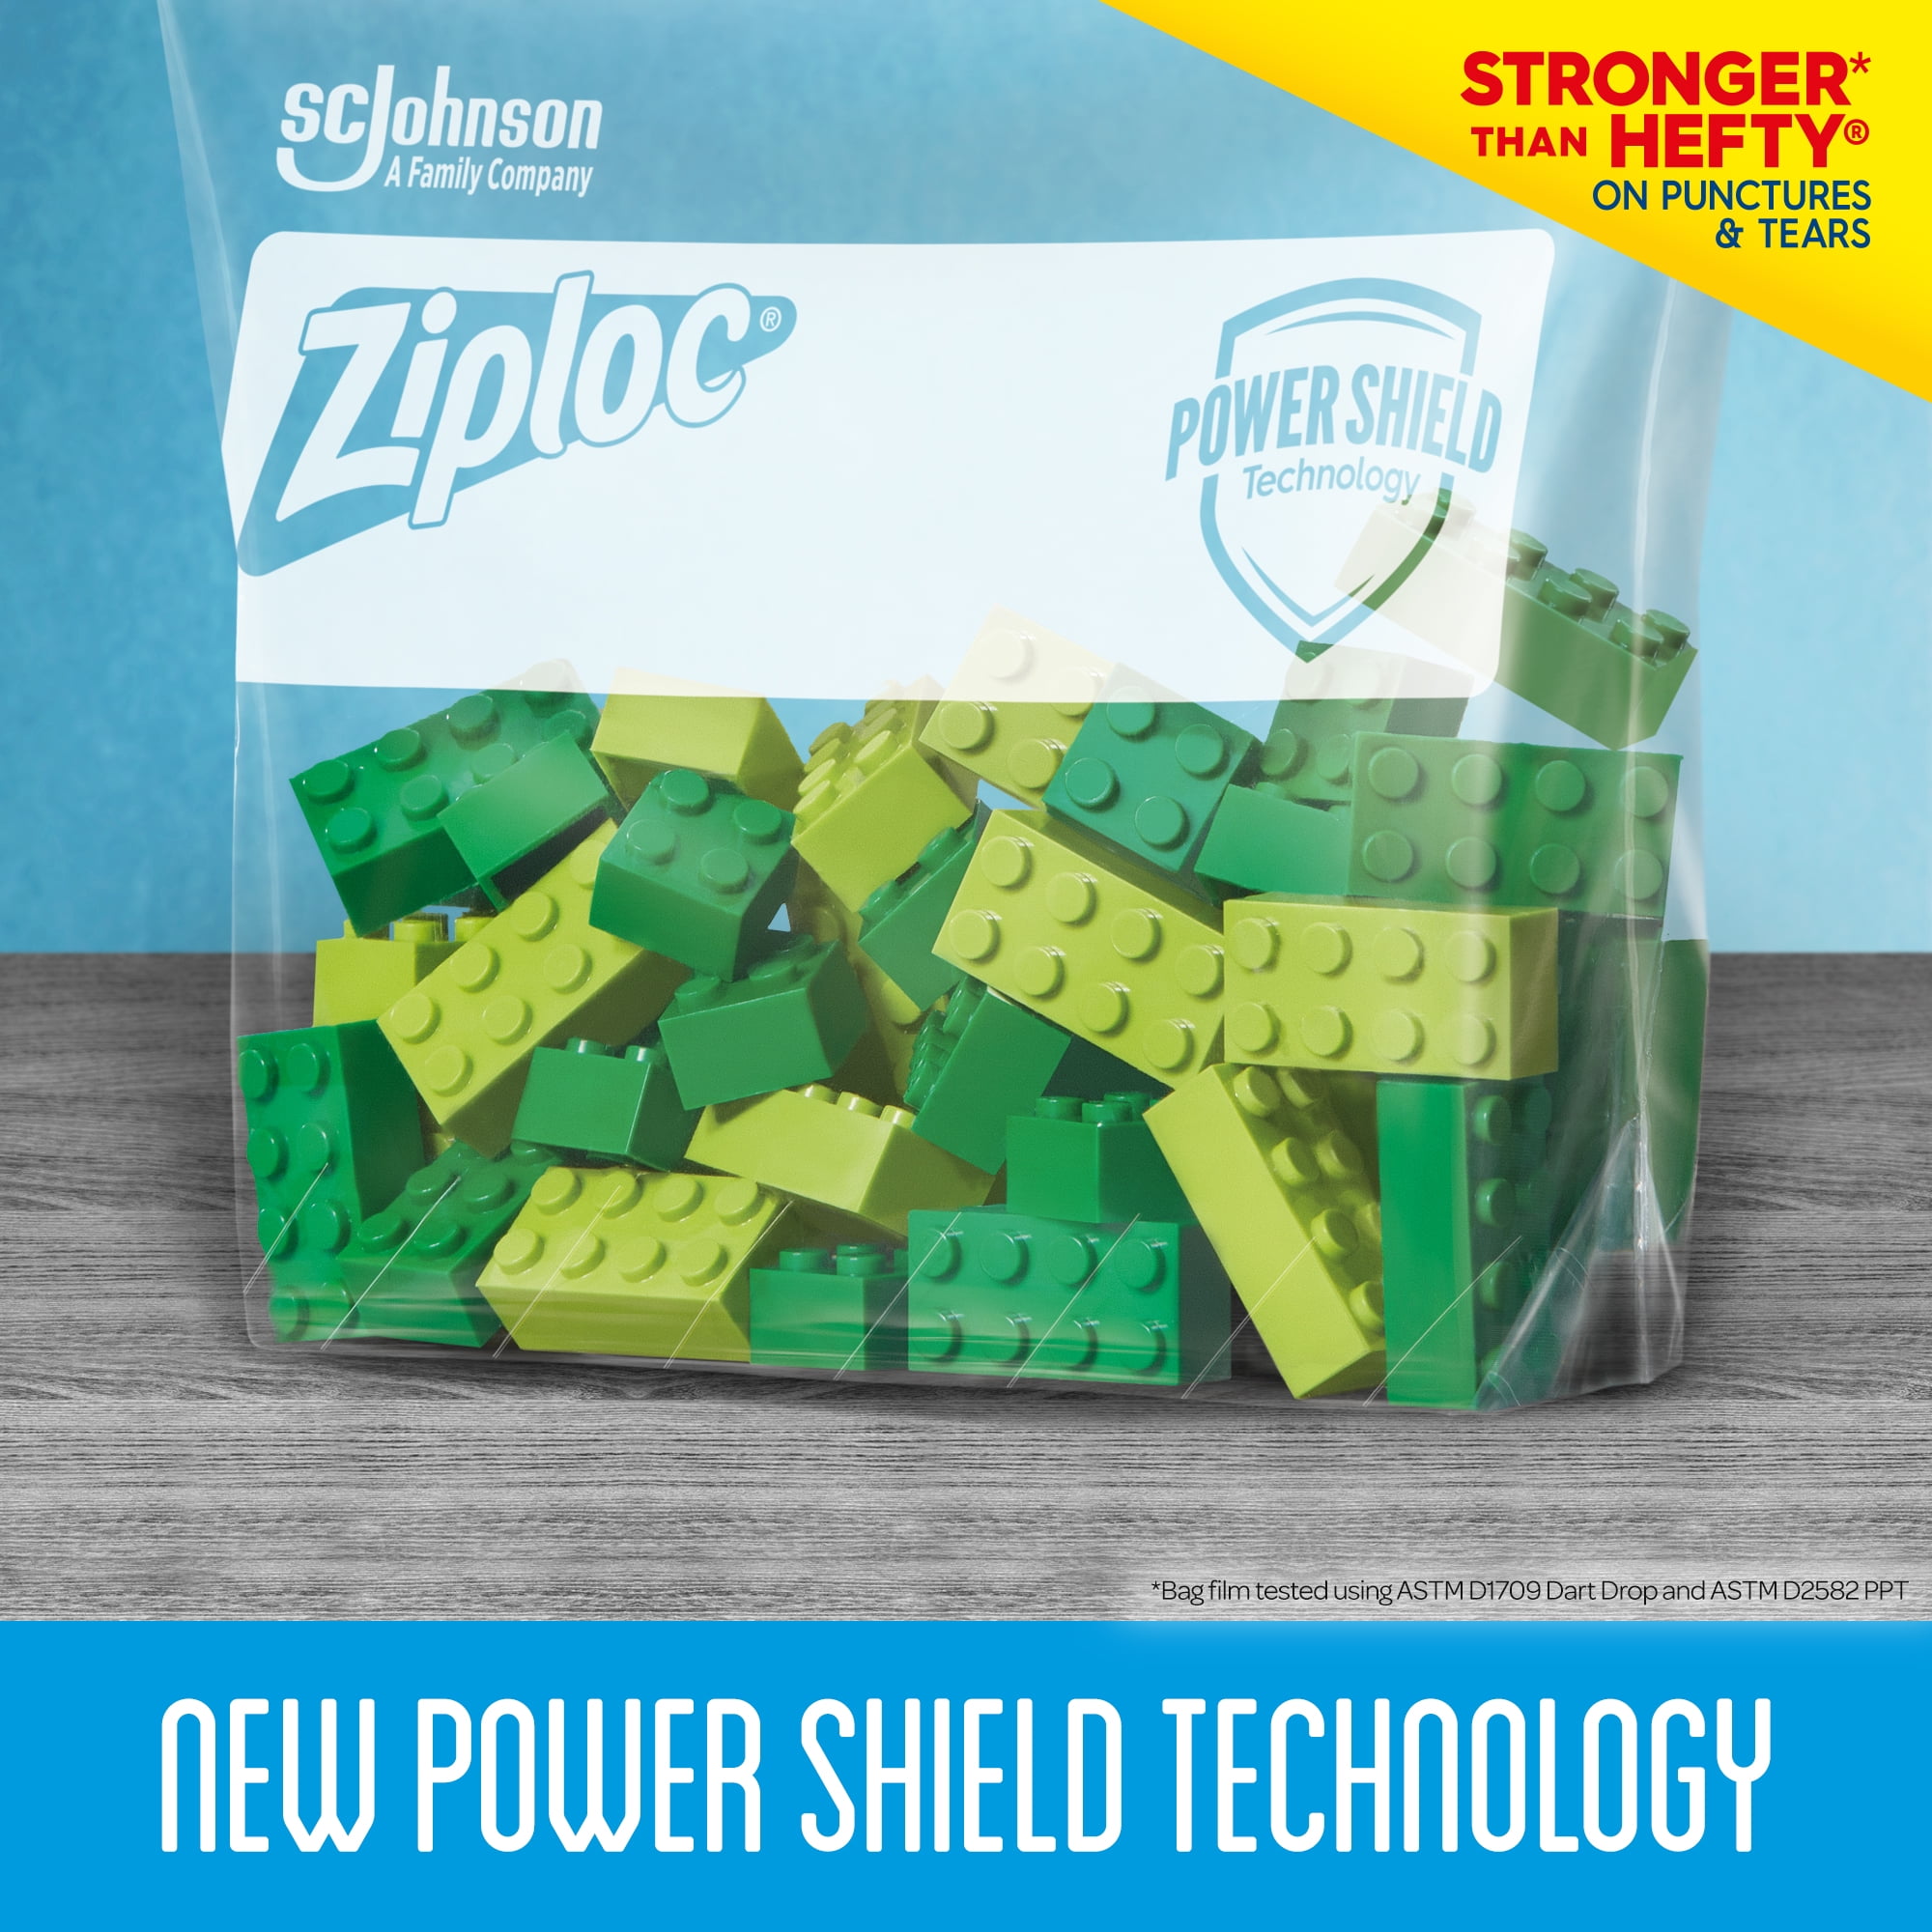 Ziploc®, Slider Storage Bags Gallon, Ziploc® brand